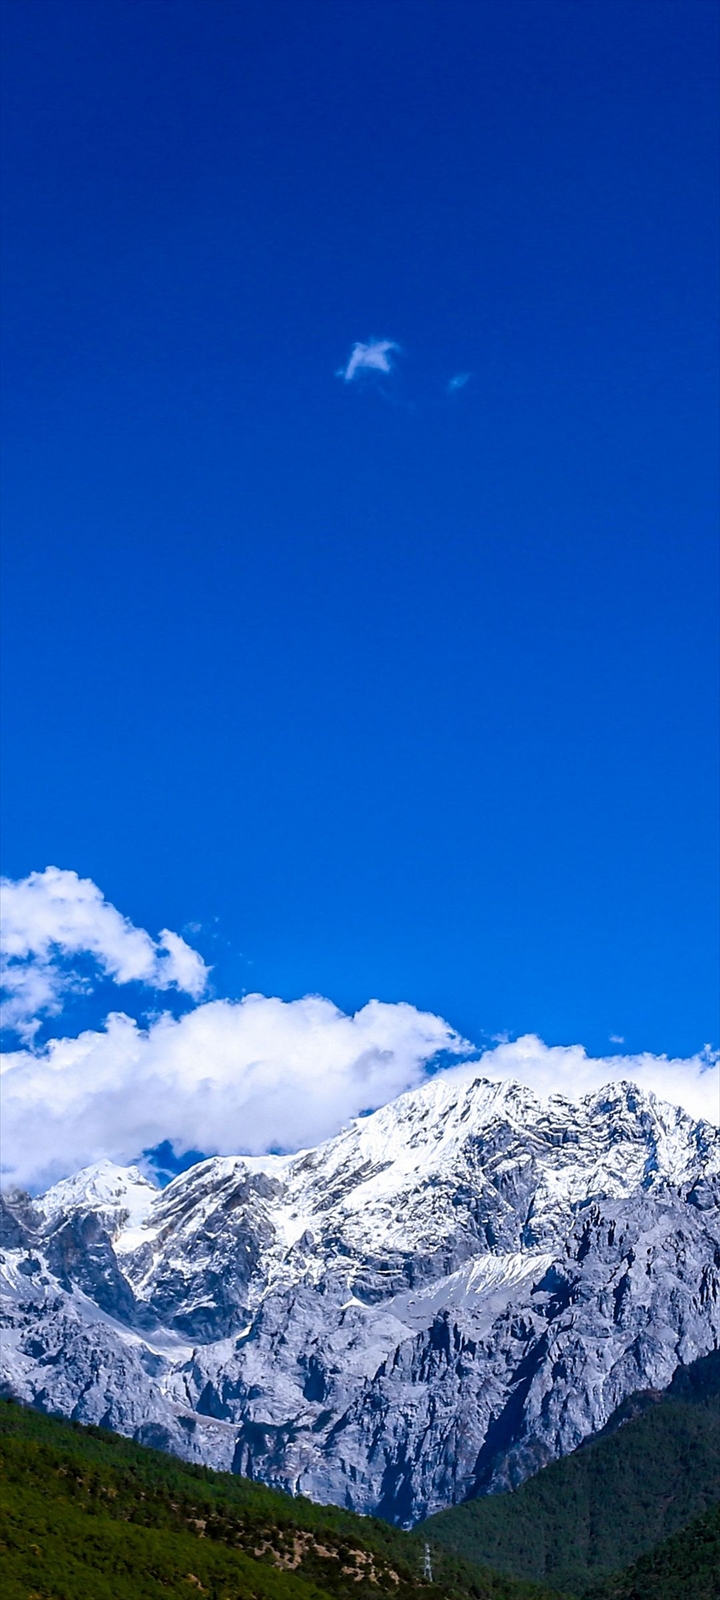 綺麗な青空と雪山 Galaxy A32 5g Androidスマホ壁紙 待ち受け スマラン